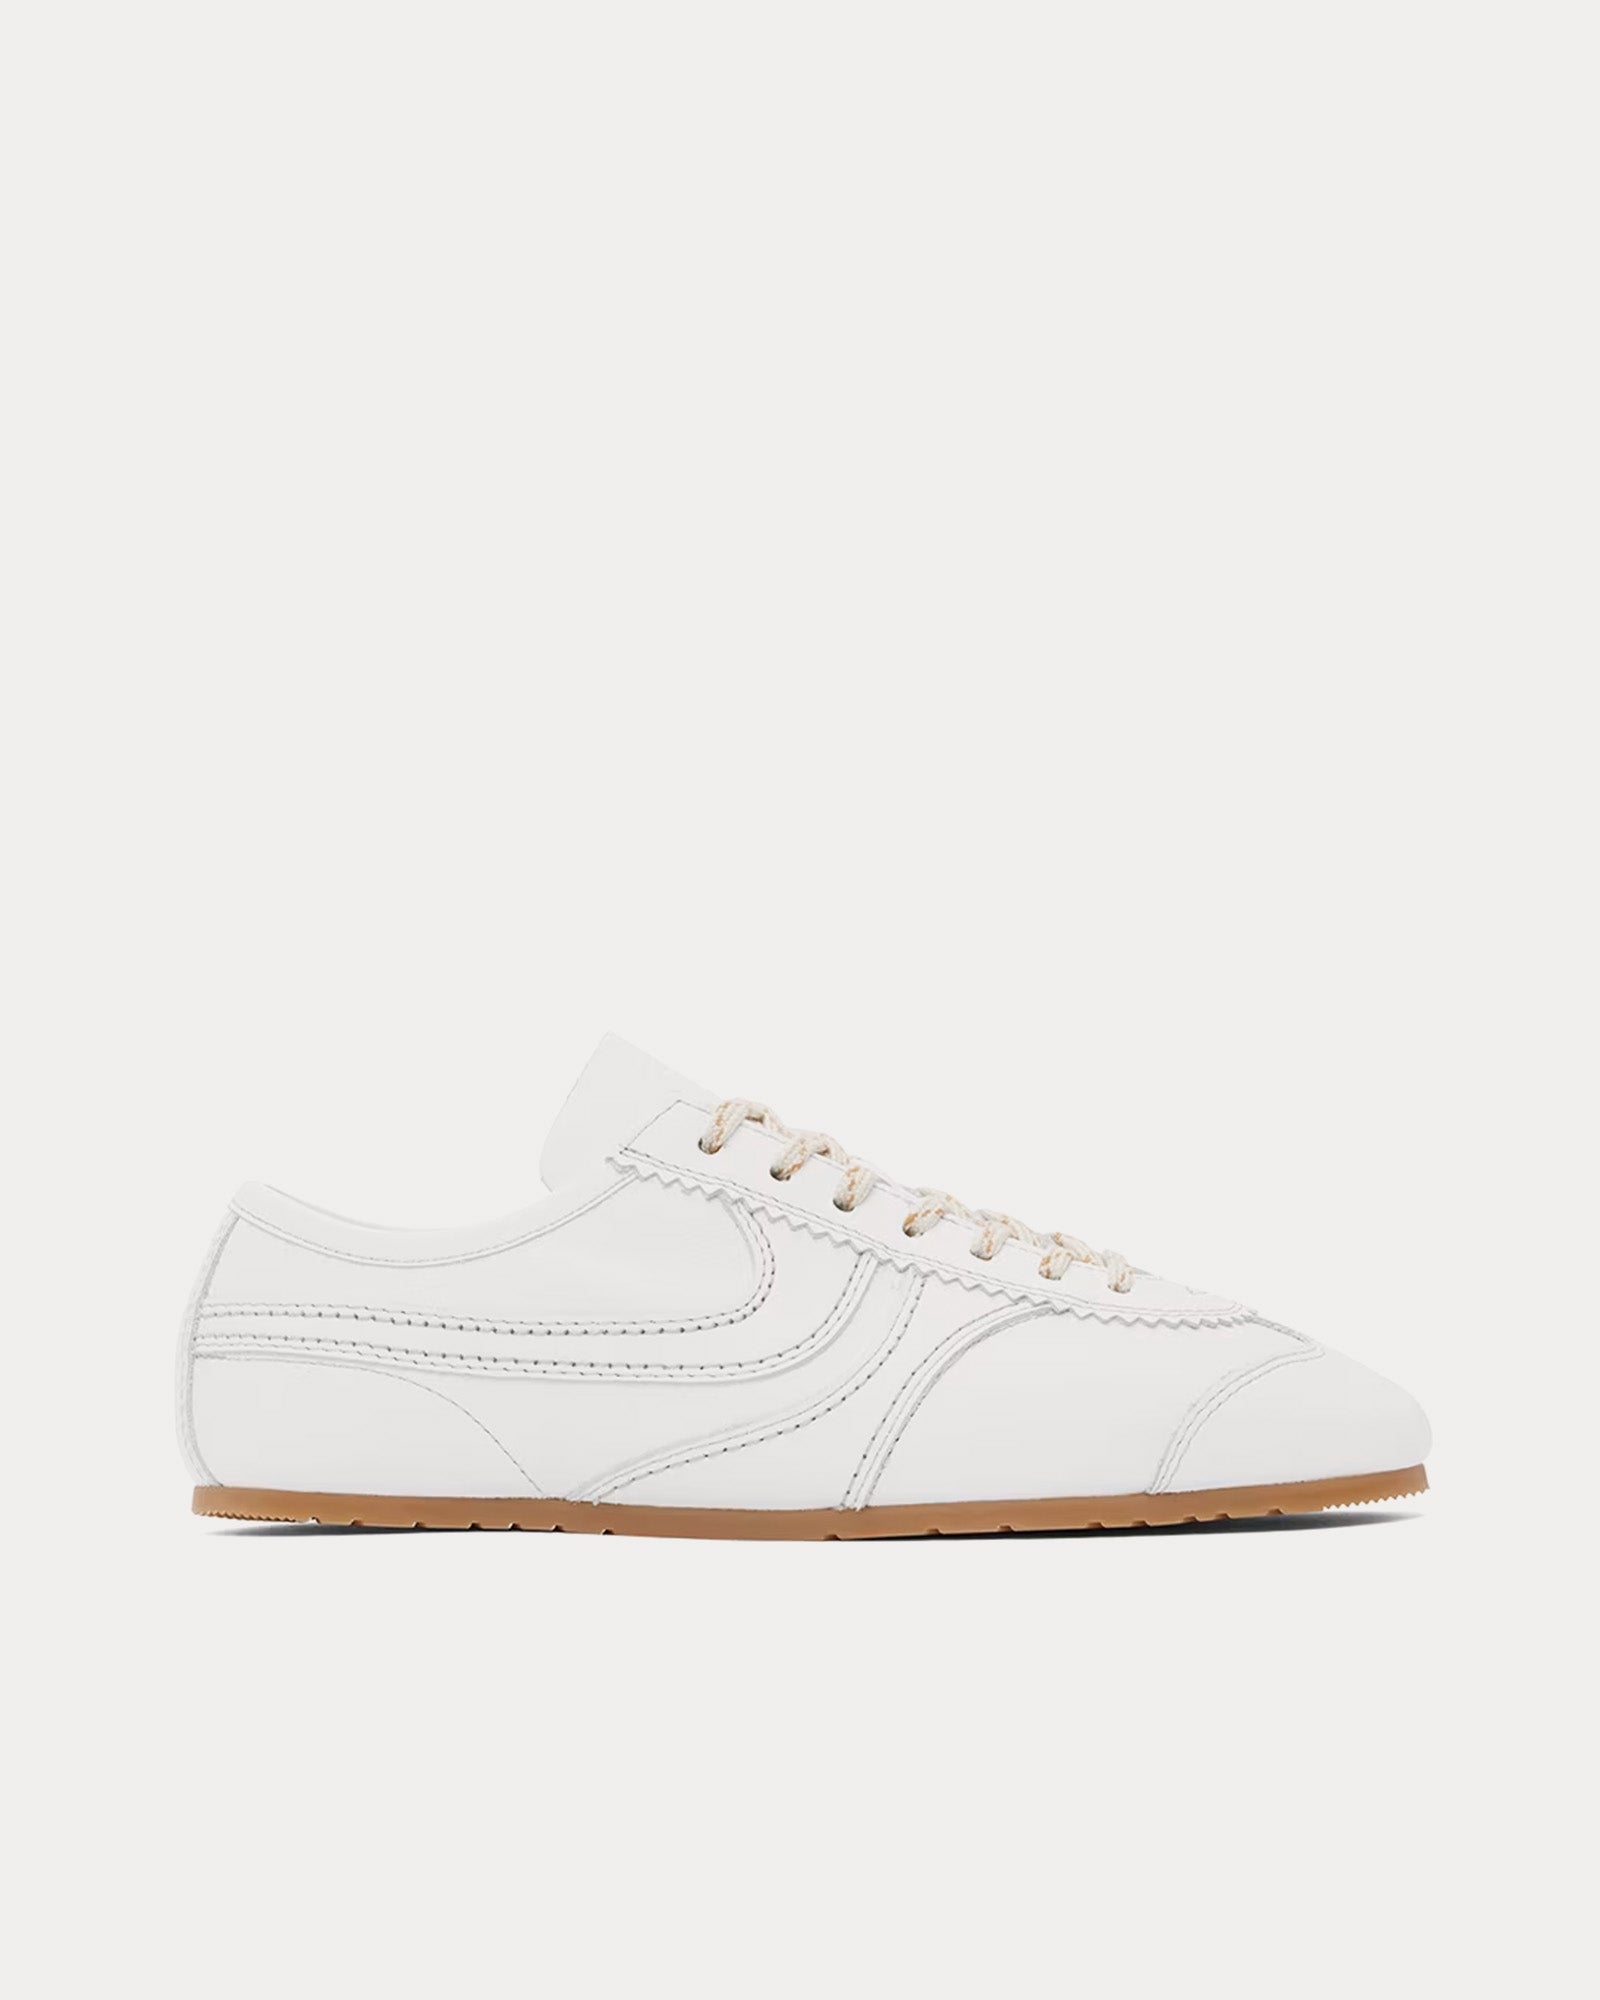 Dries Van Noten - 70's Suede White Low Top Sneakers